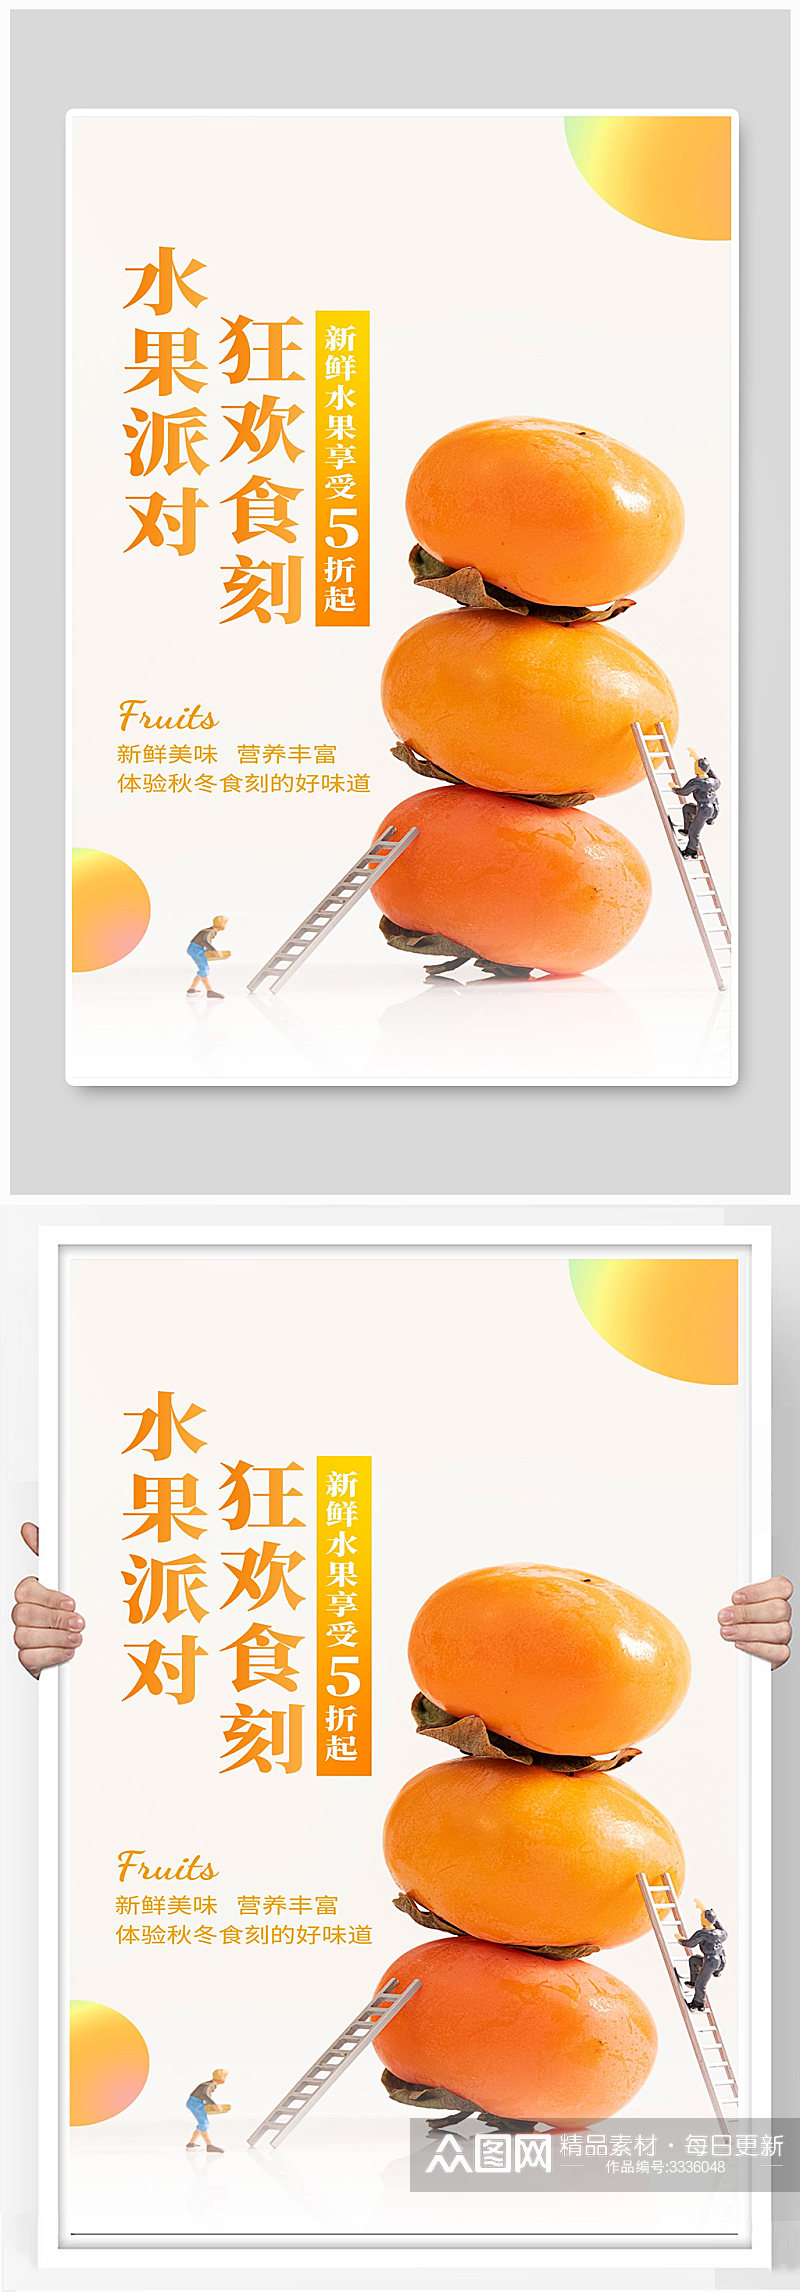 水果派对宣传海报设计素材